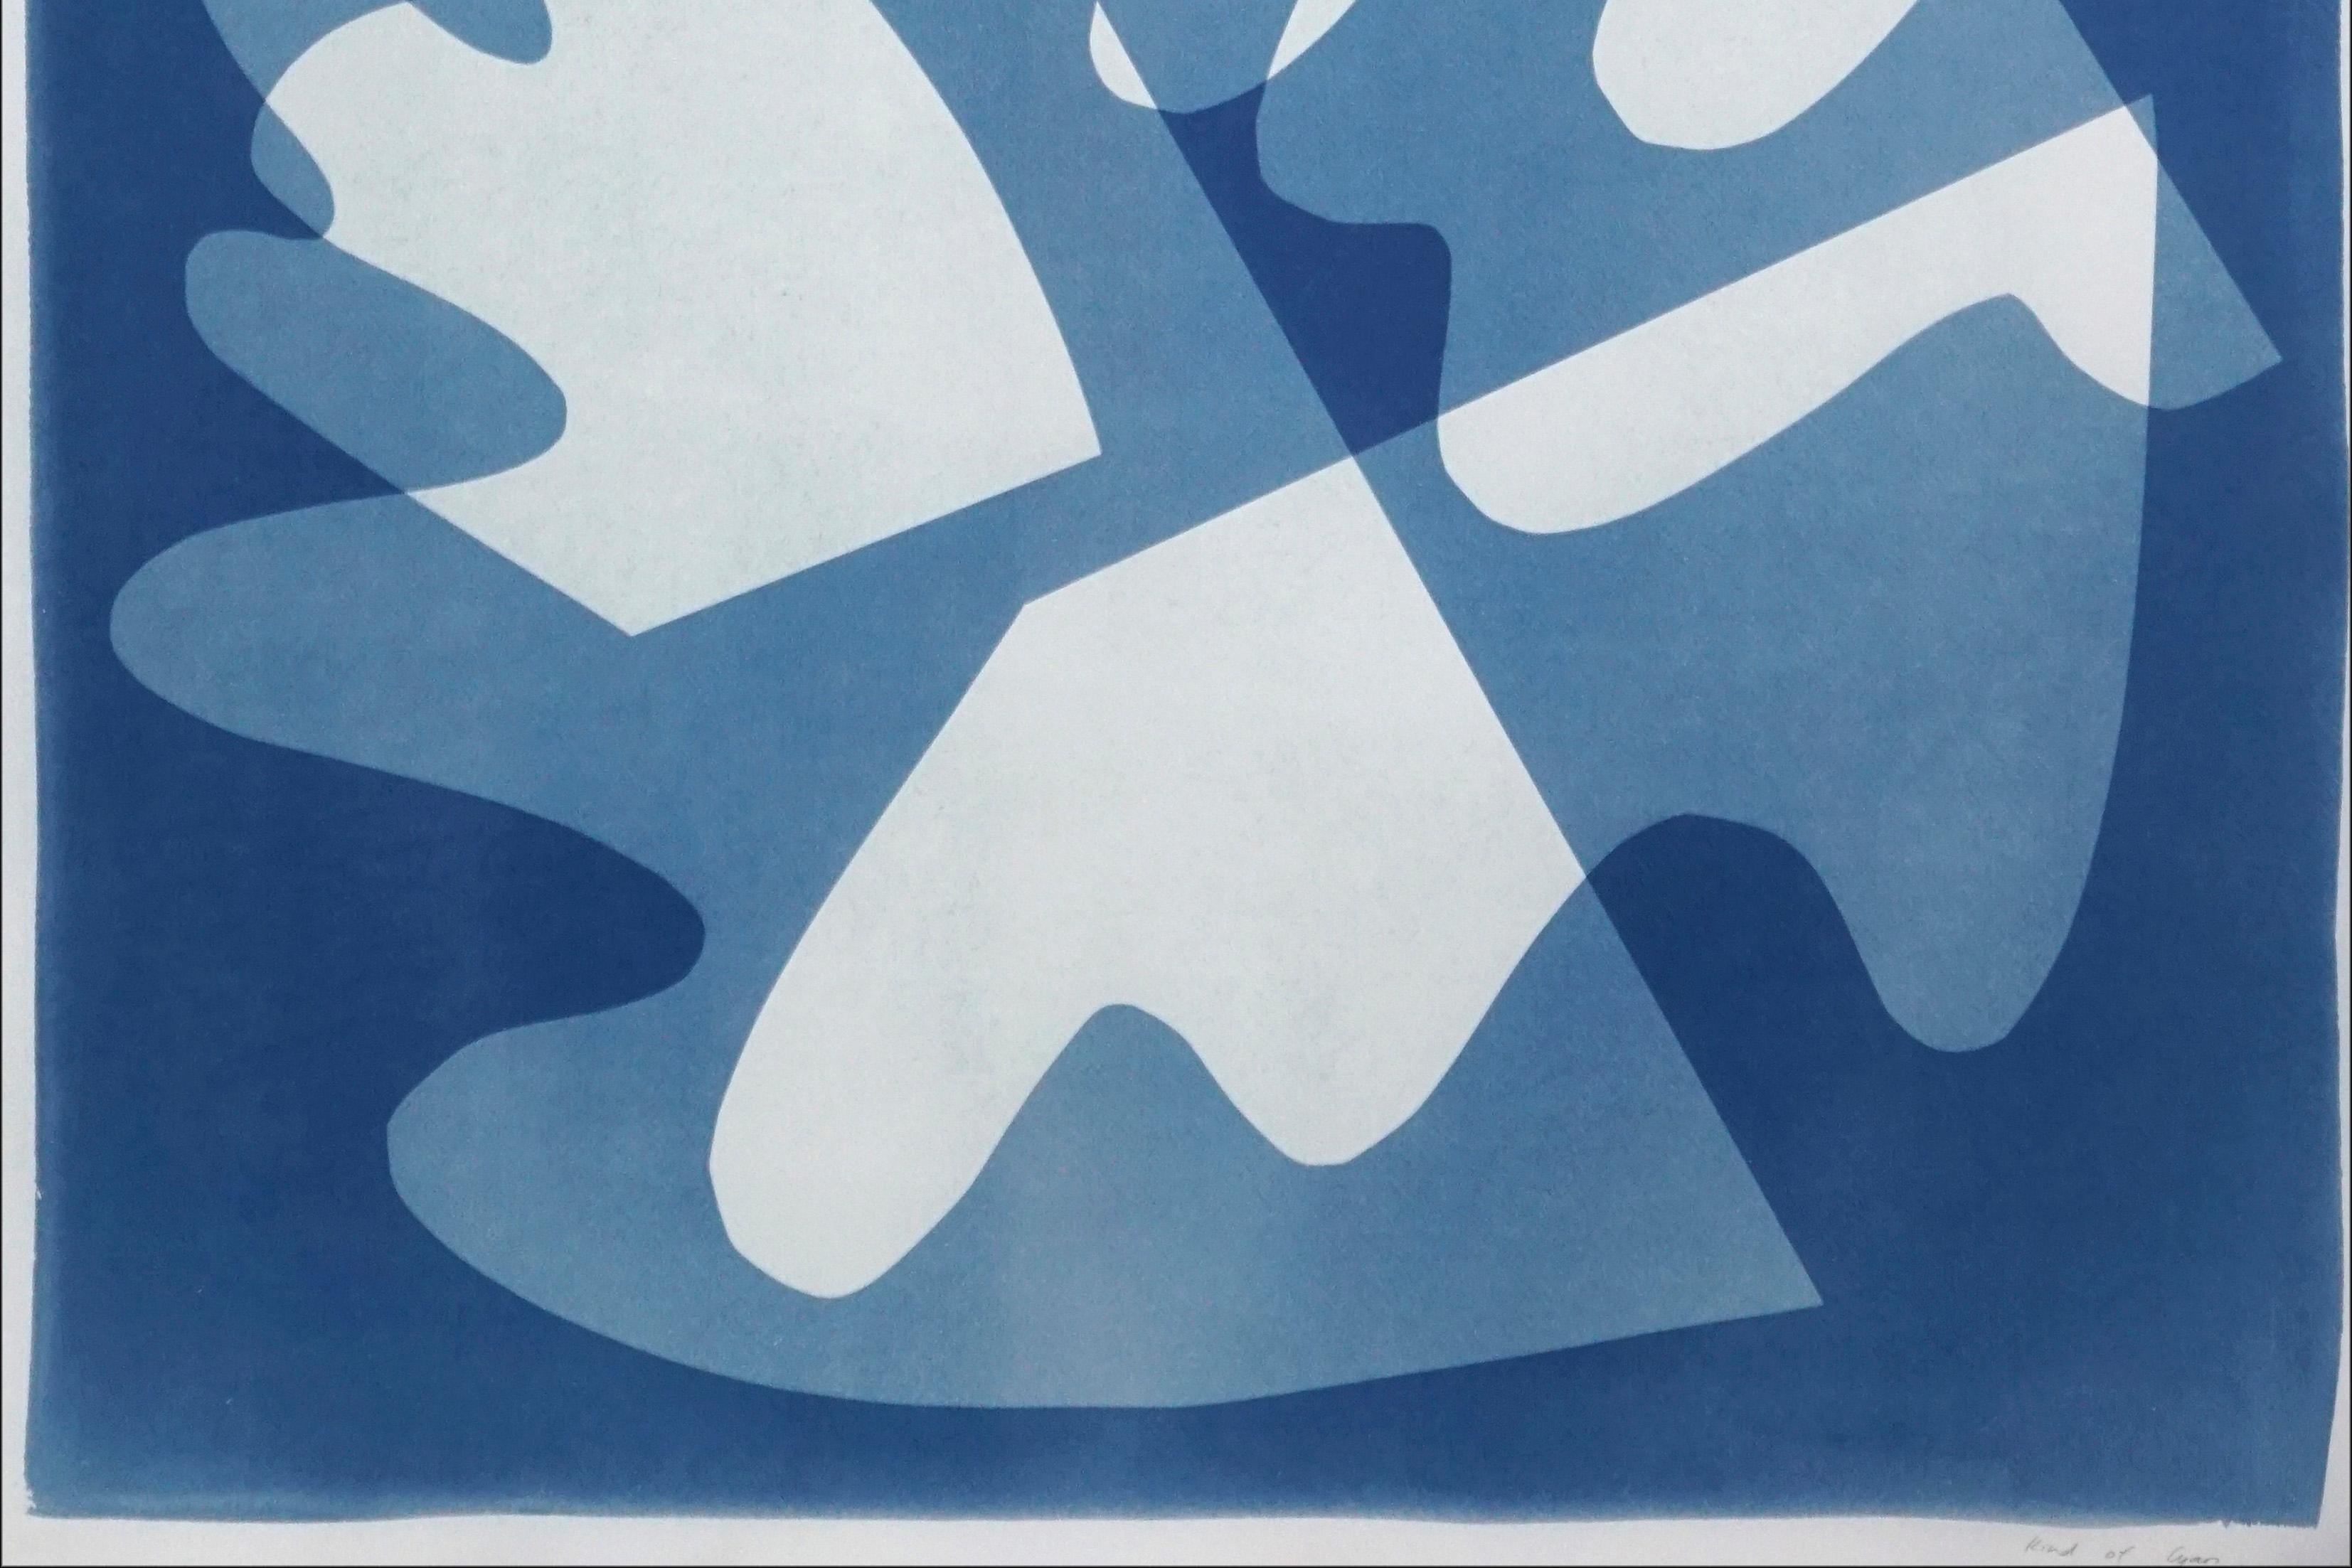 Walking on Glass, Monotype unique, découpes de formes mi-siècle dans les tons bleus 2021 - Bleu Abstract Photograph par Kind of Cyan